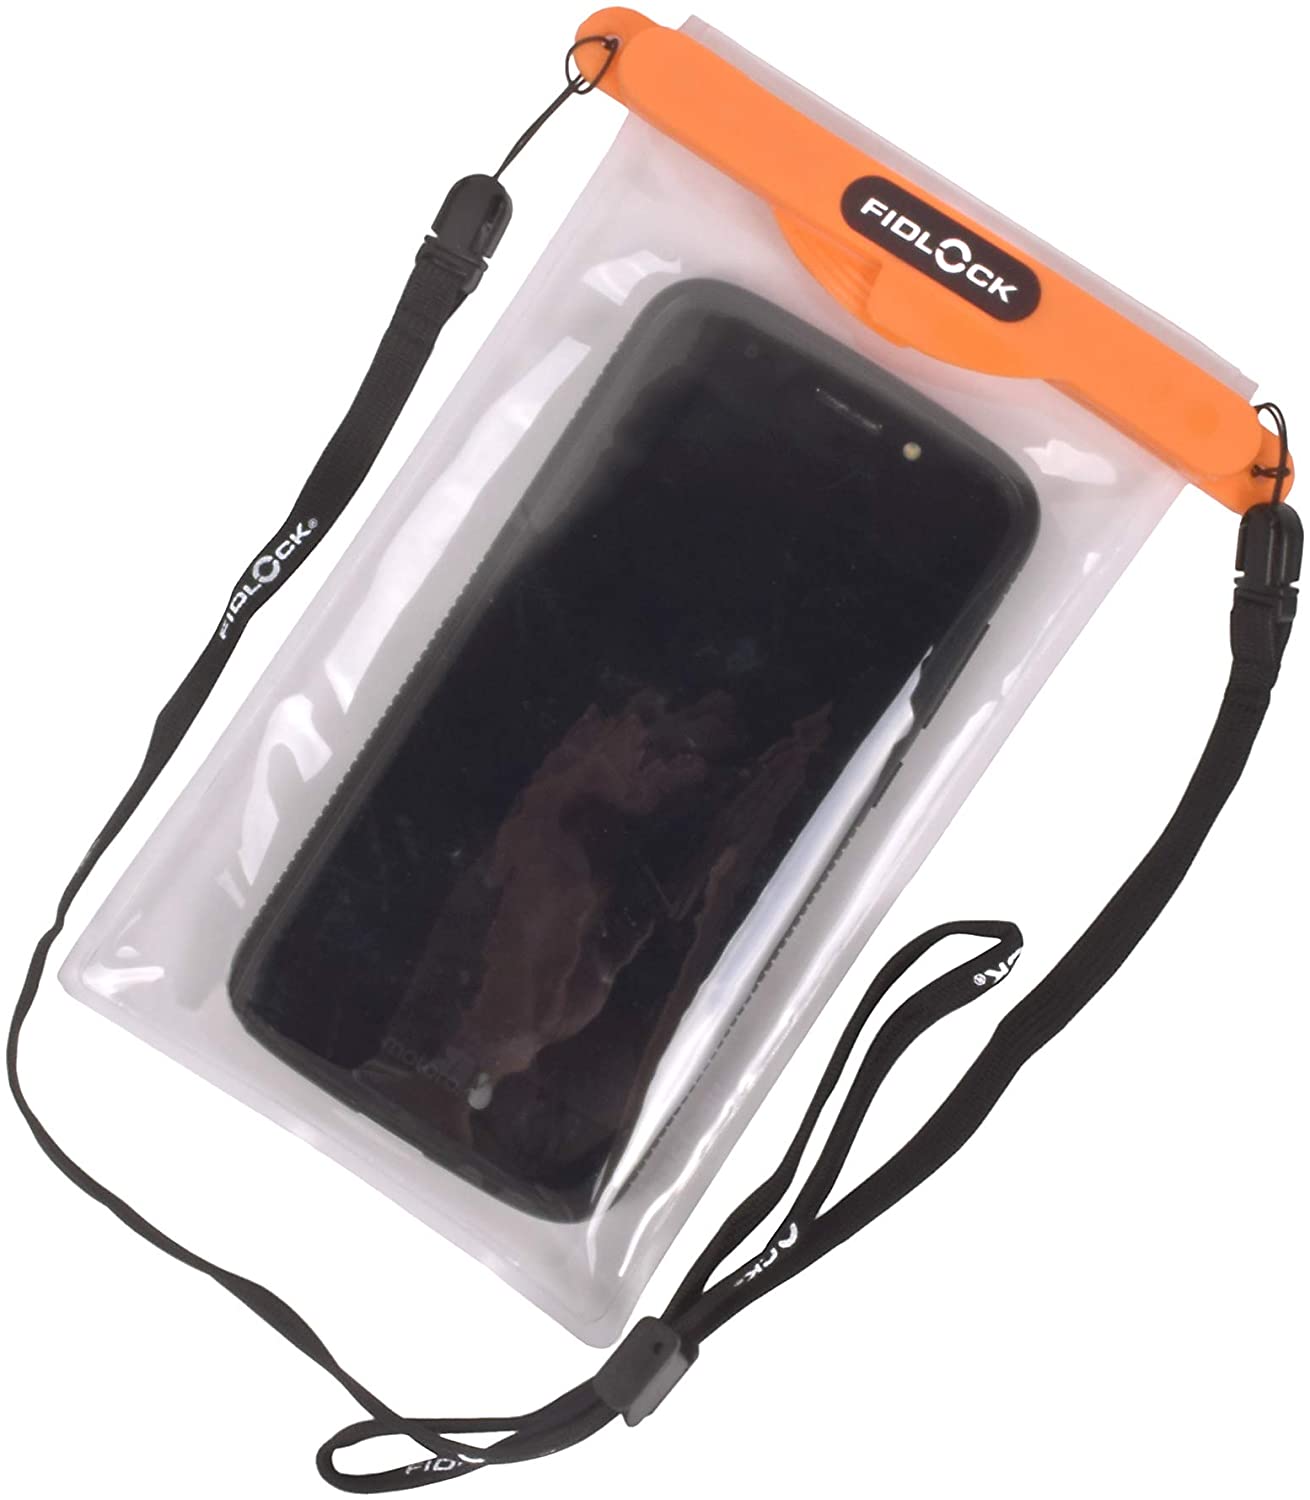 Voděodolné pouzdro na mobil Fidlock MEDI (Gooper technology) Barva: Oranžová